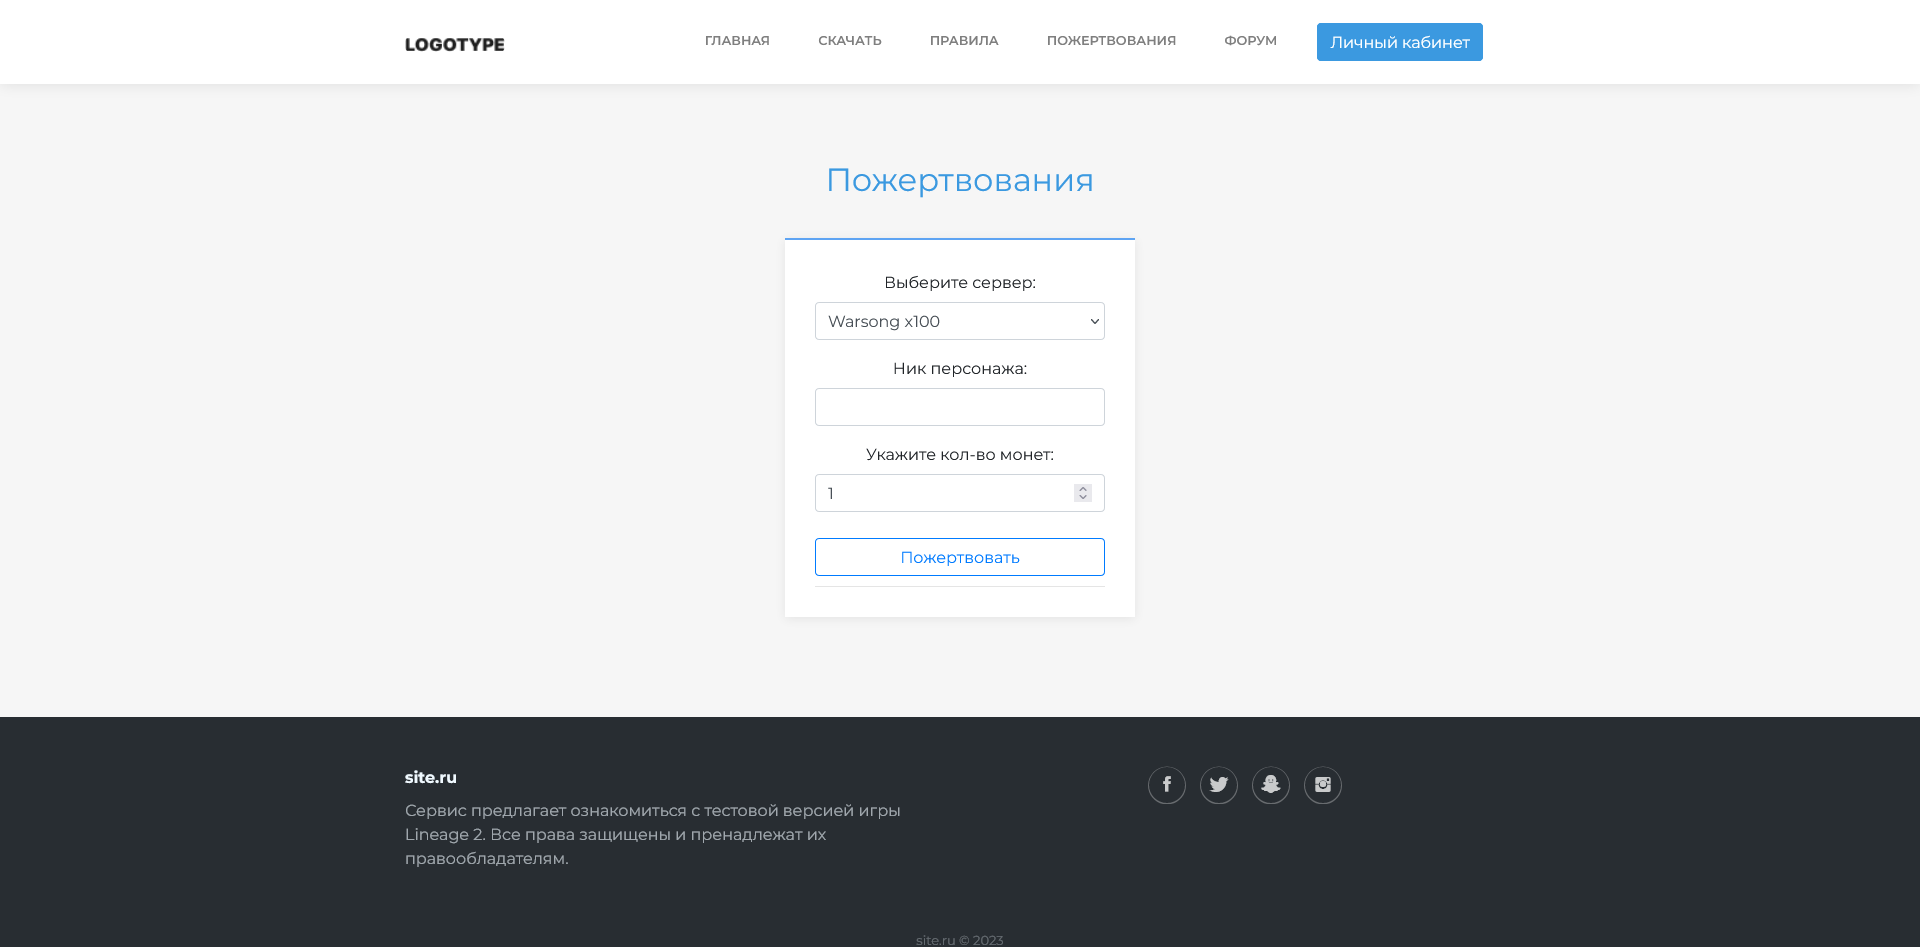 Screenshot 2023-05-12 at 13-41-57 Пожертвования - site.ru.png